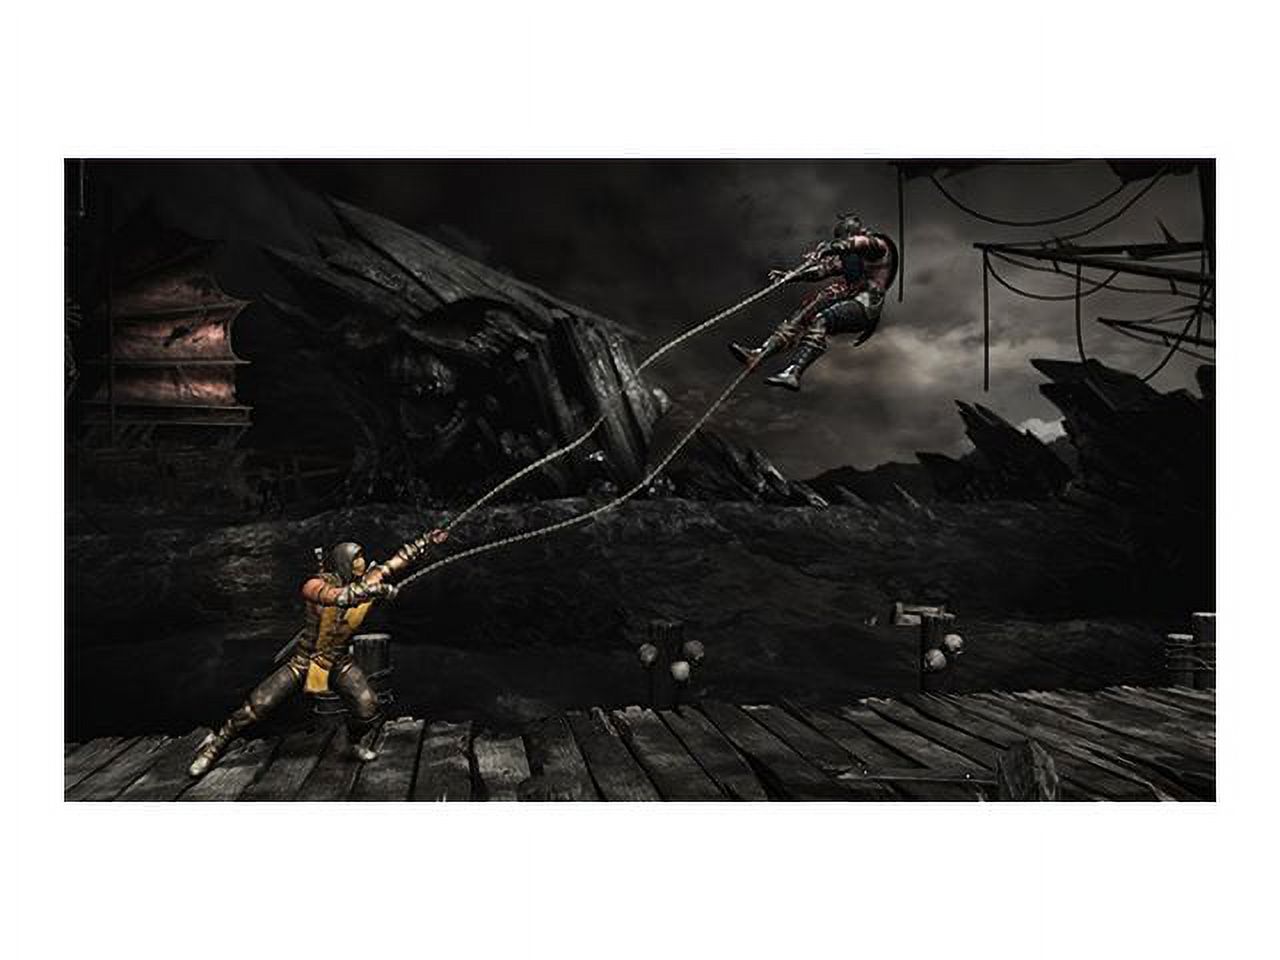 Warner Bros. Mortal Kombat X (PS4) - Pre-Owned